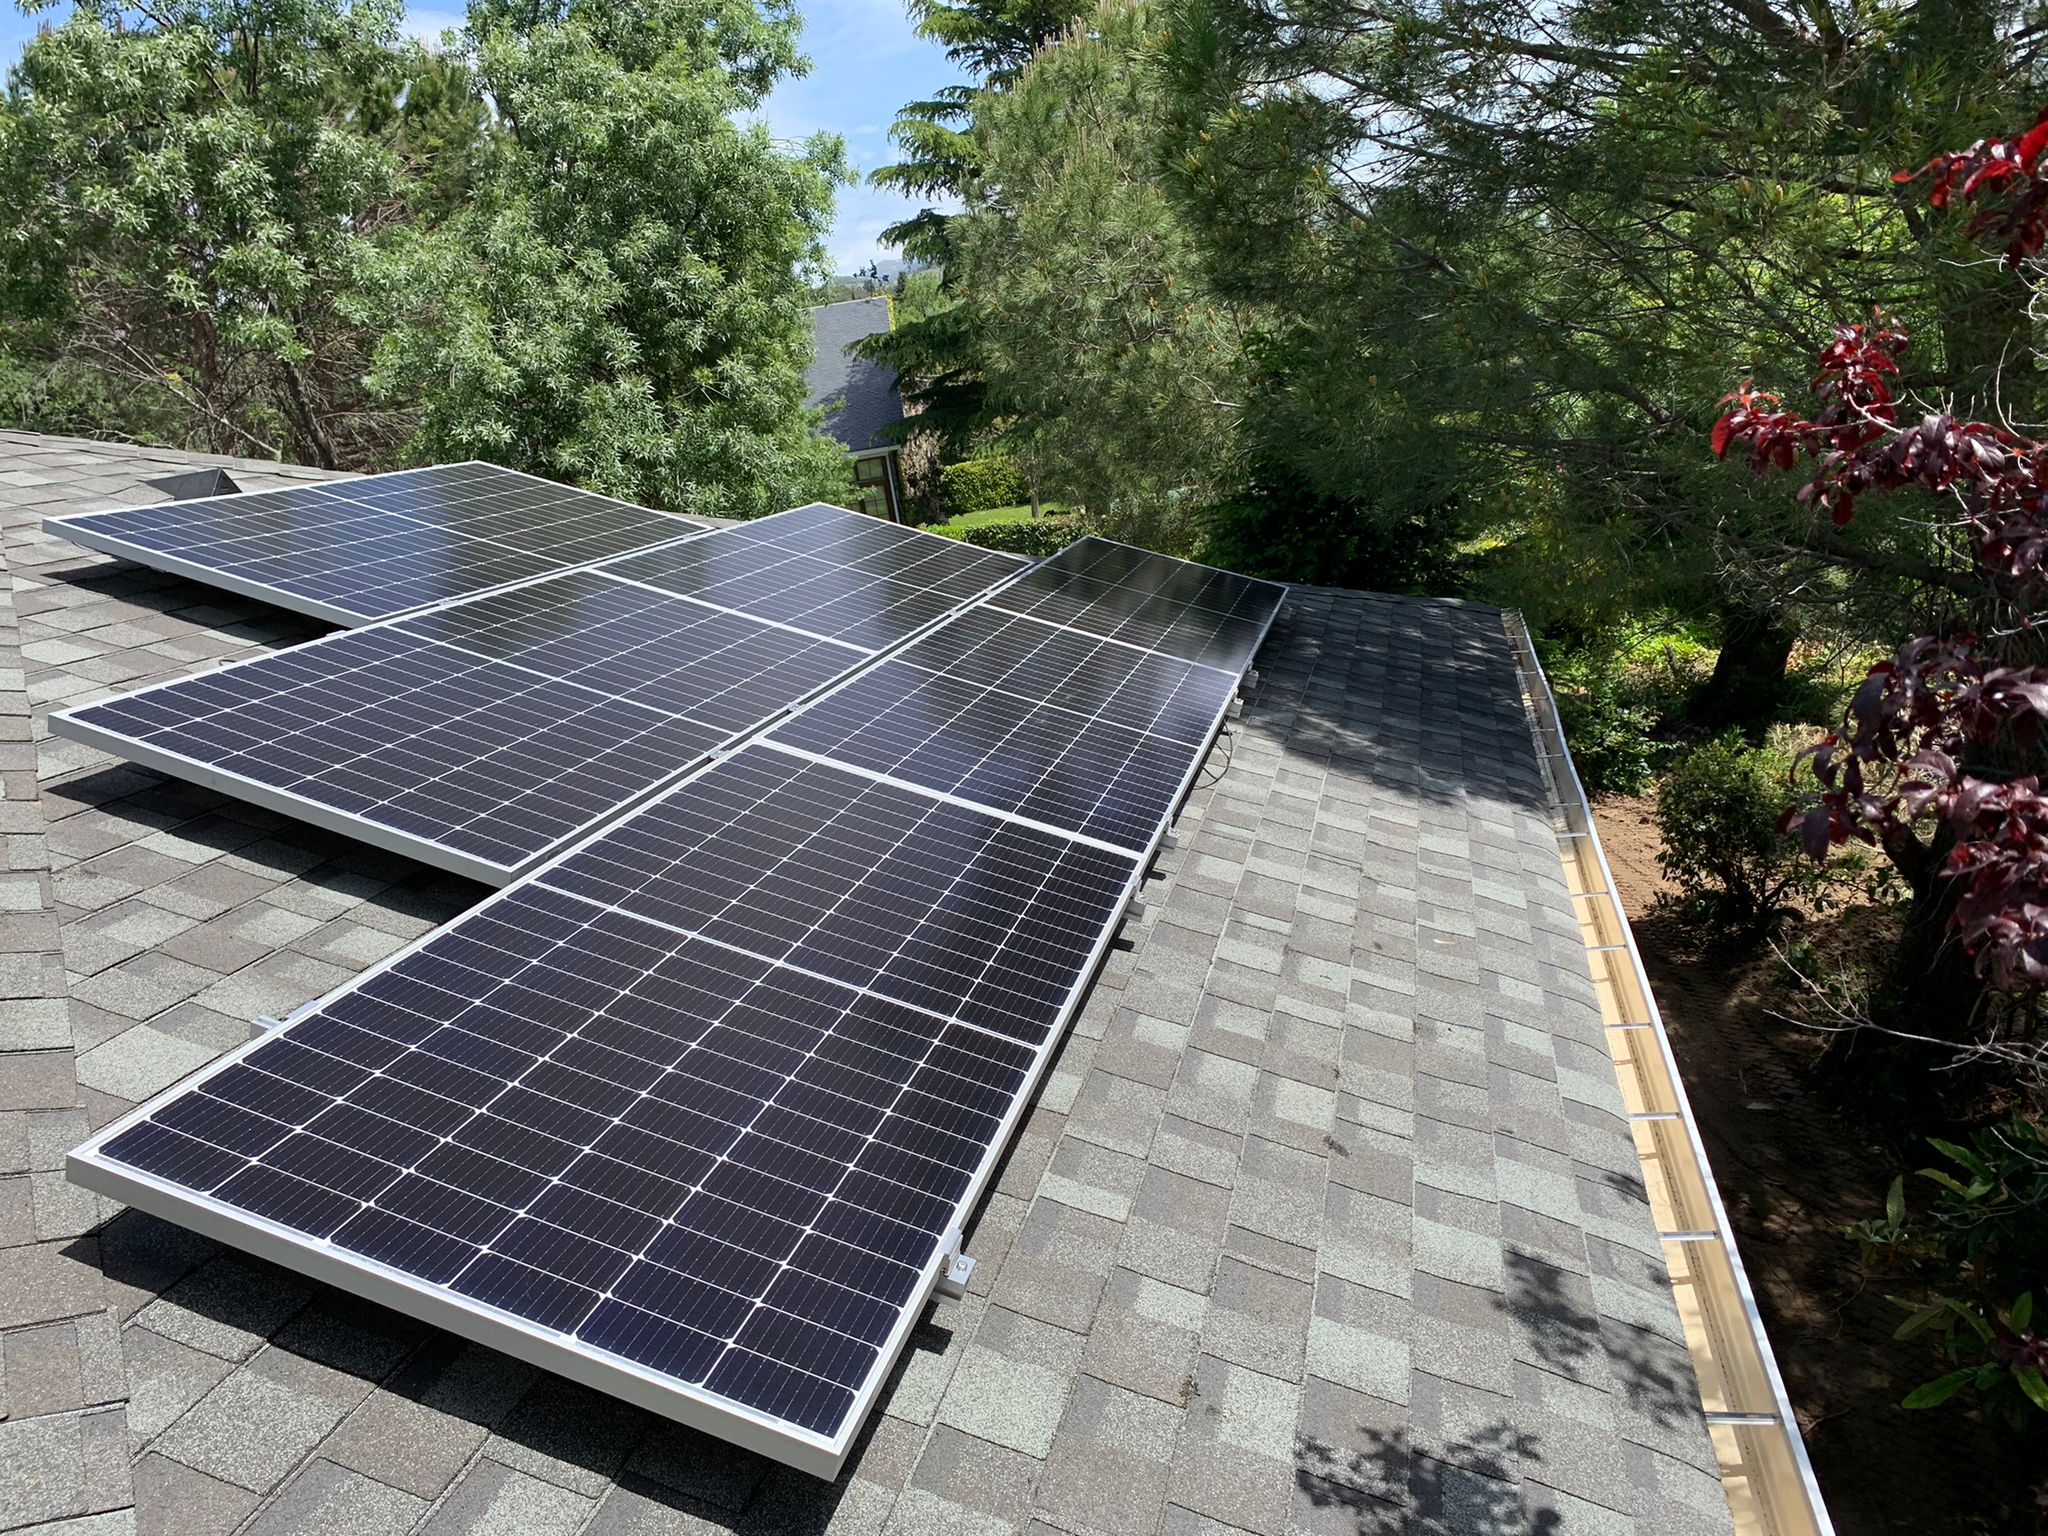 Instalación fotovoltaica para autoconsumo en vivienda unifamiliar